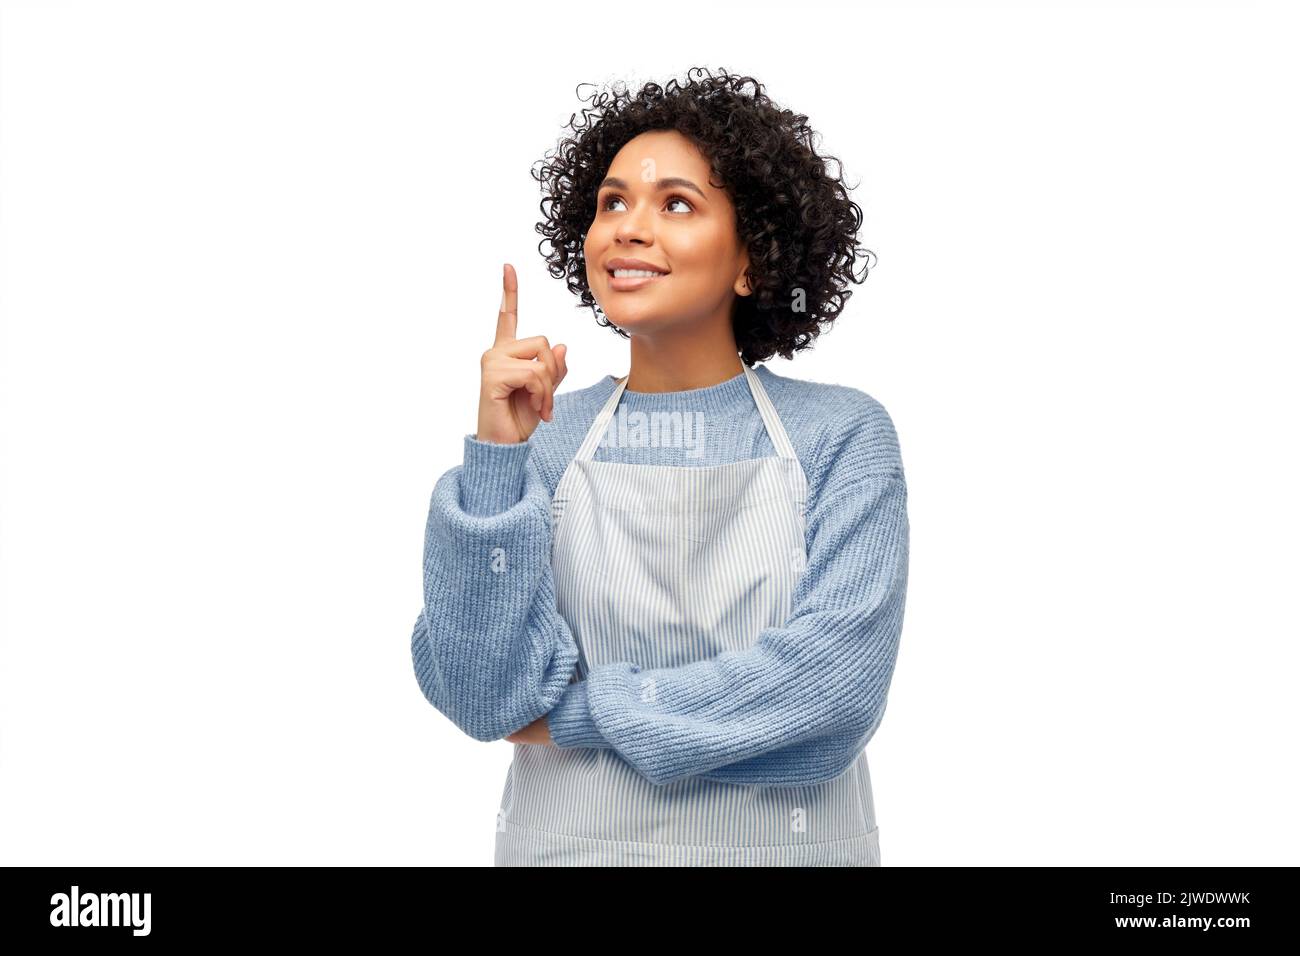 mujer sonriente en el delantal señalando con el dedo hacia arriba Foto de stock